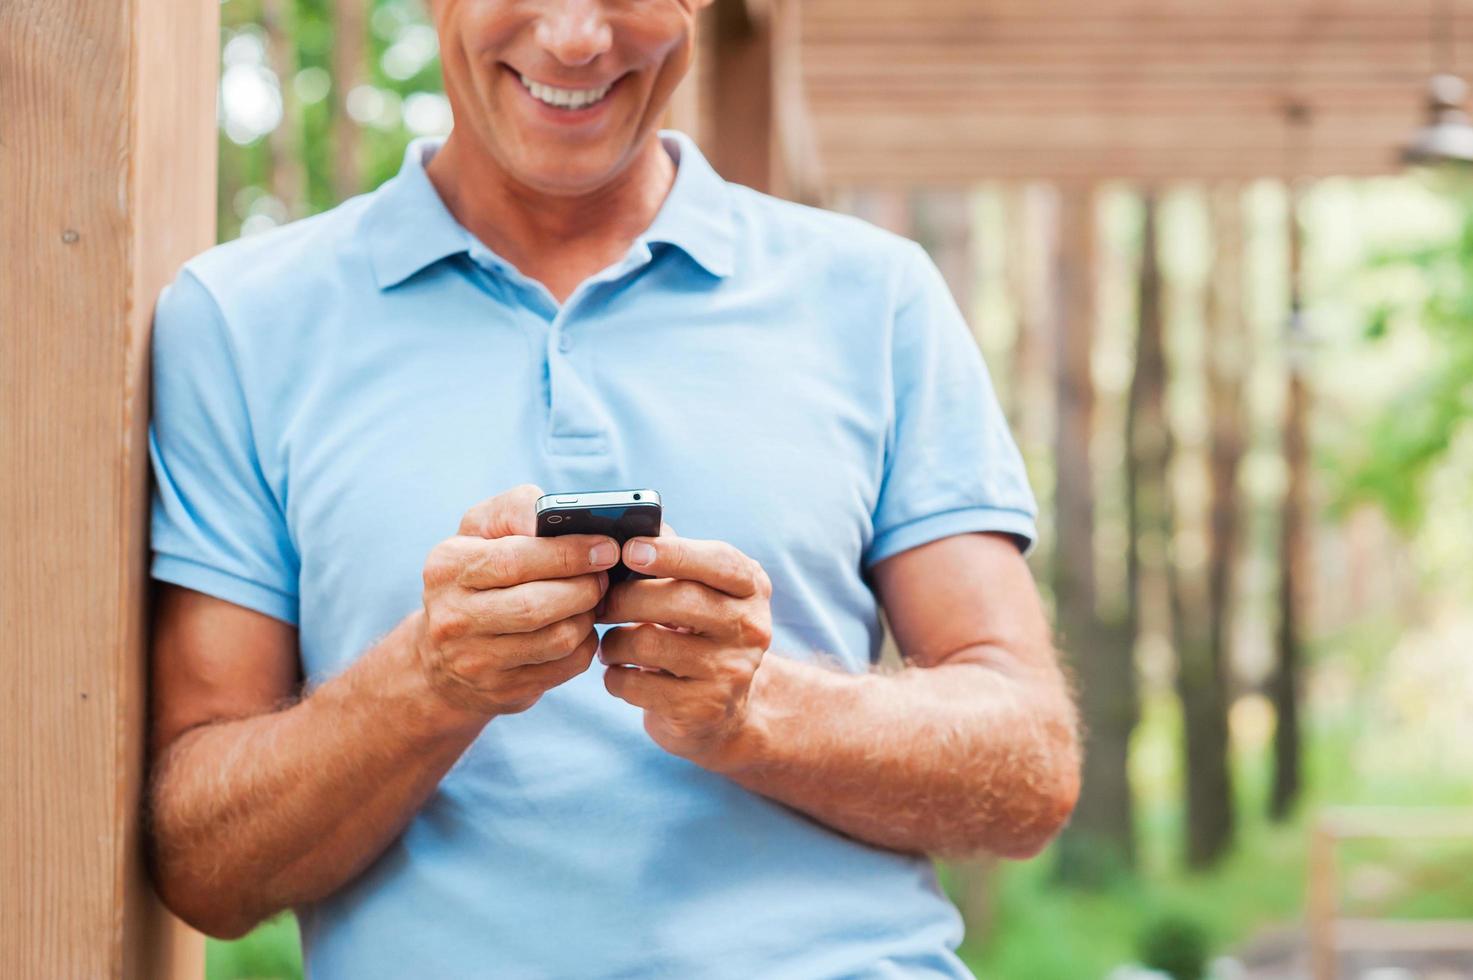 examinando seu novo telefone inteligente. alegre homem maduro segurando o celular e sorrindo em pé ao ar livre foto